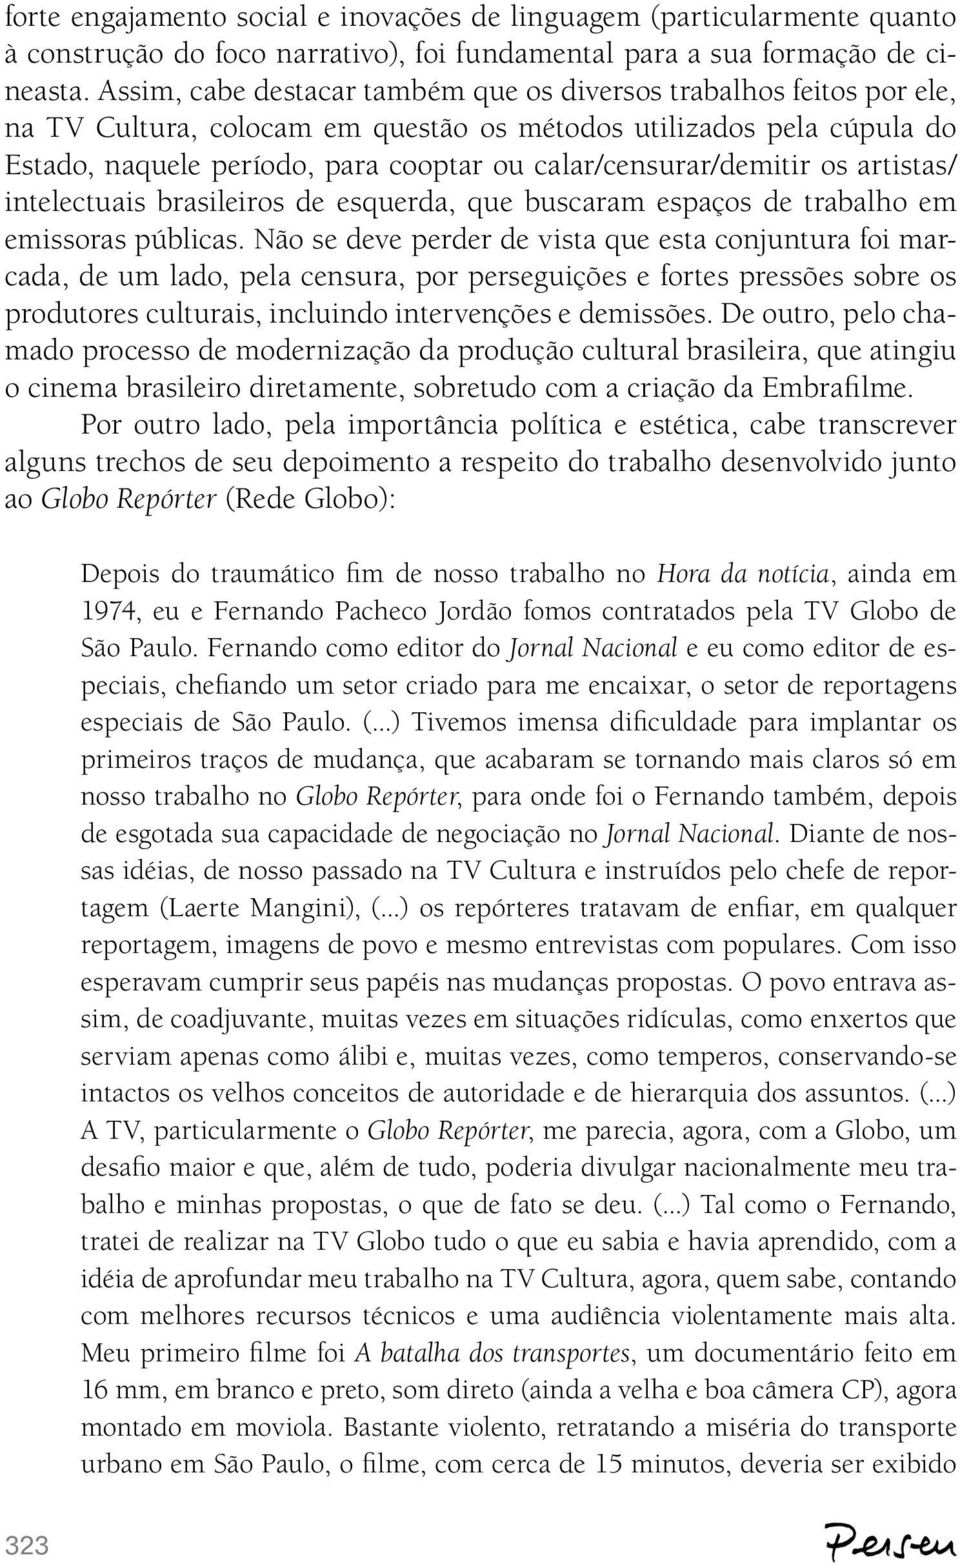 calar/censurar/demitir os artistas/ intelectuais brasileiros de esquerda, que buscaram espaços de trabalho em emissoras públicas.